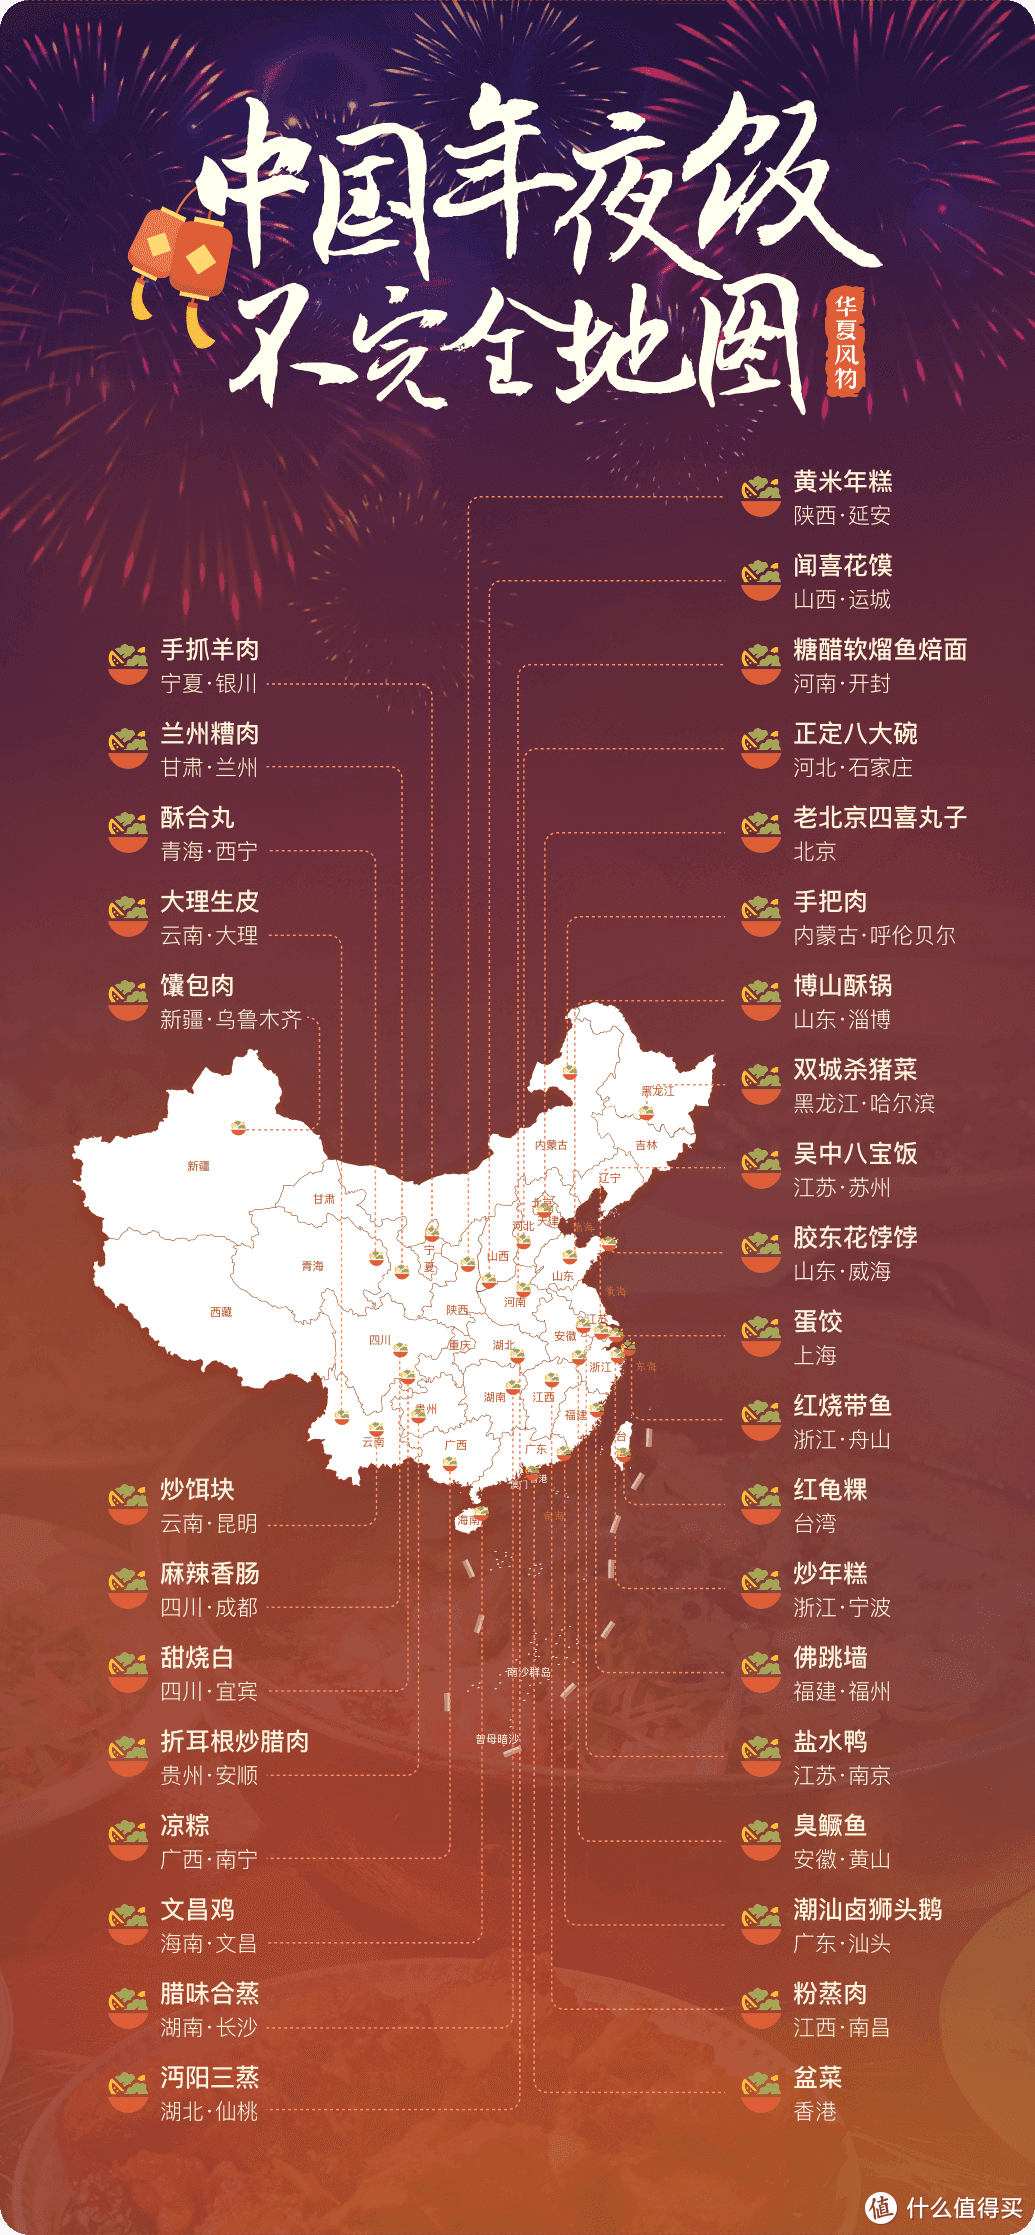 中国年夜饭不完全地图 08华夏风物